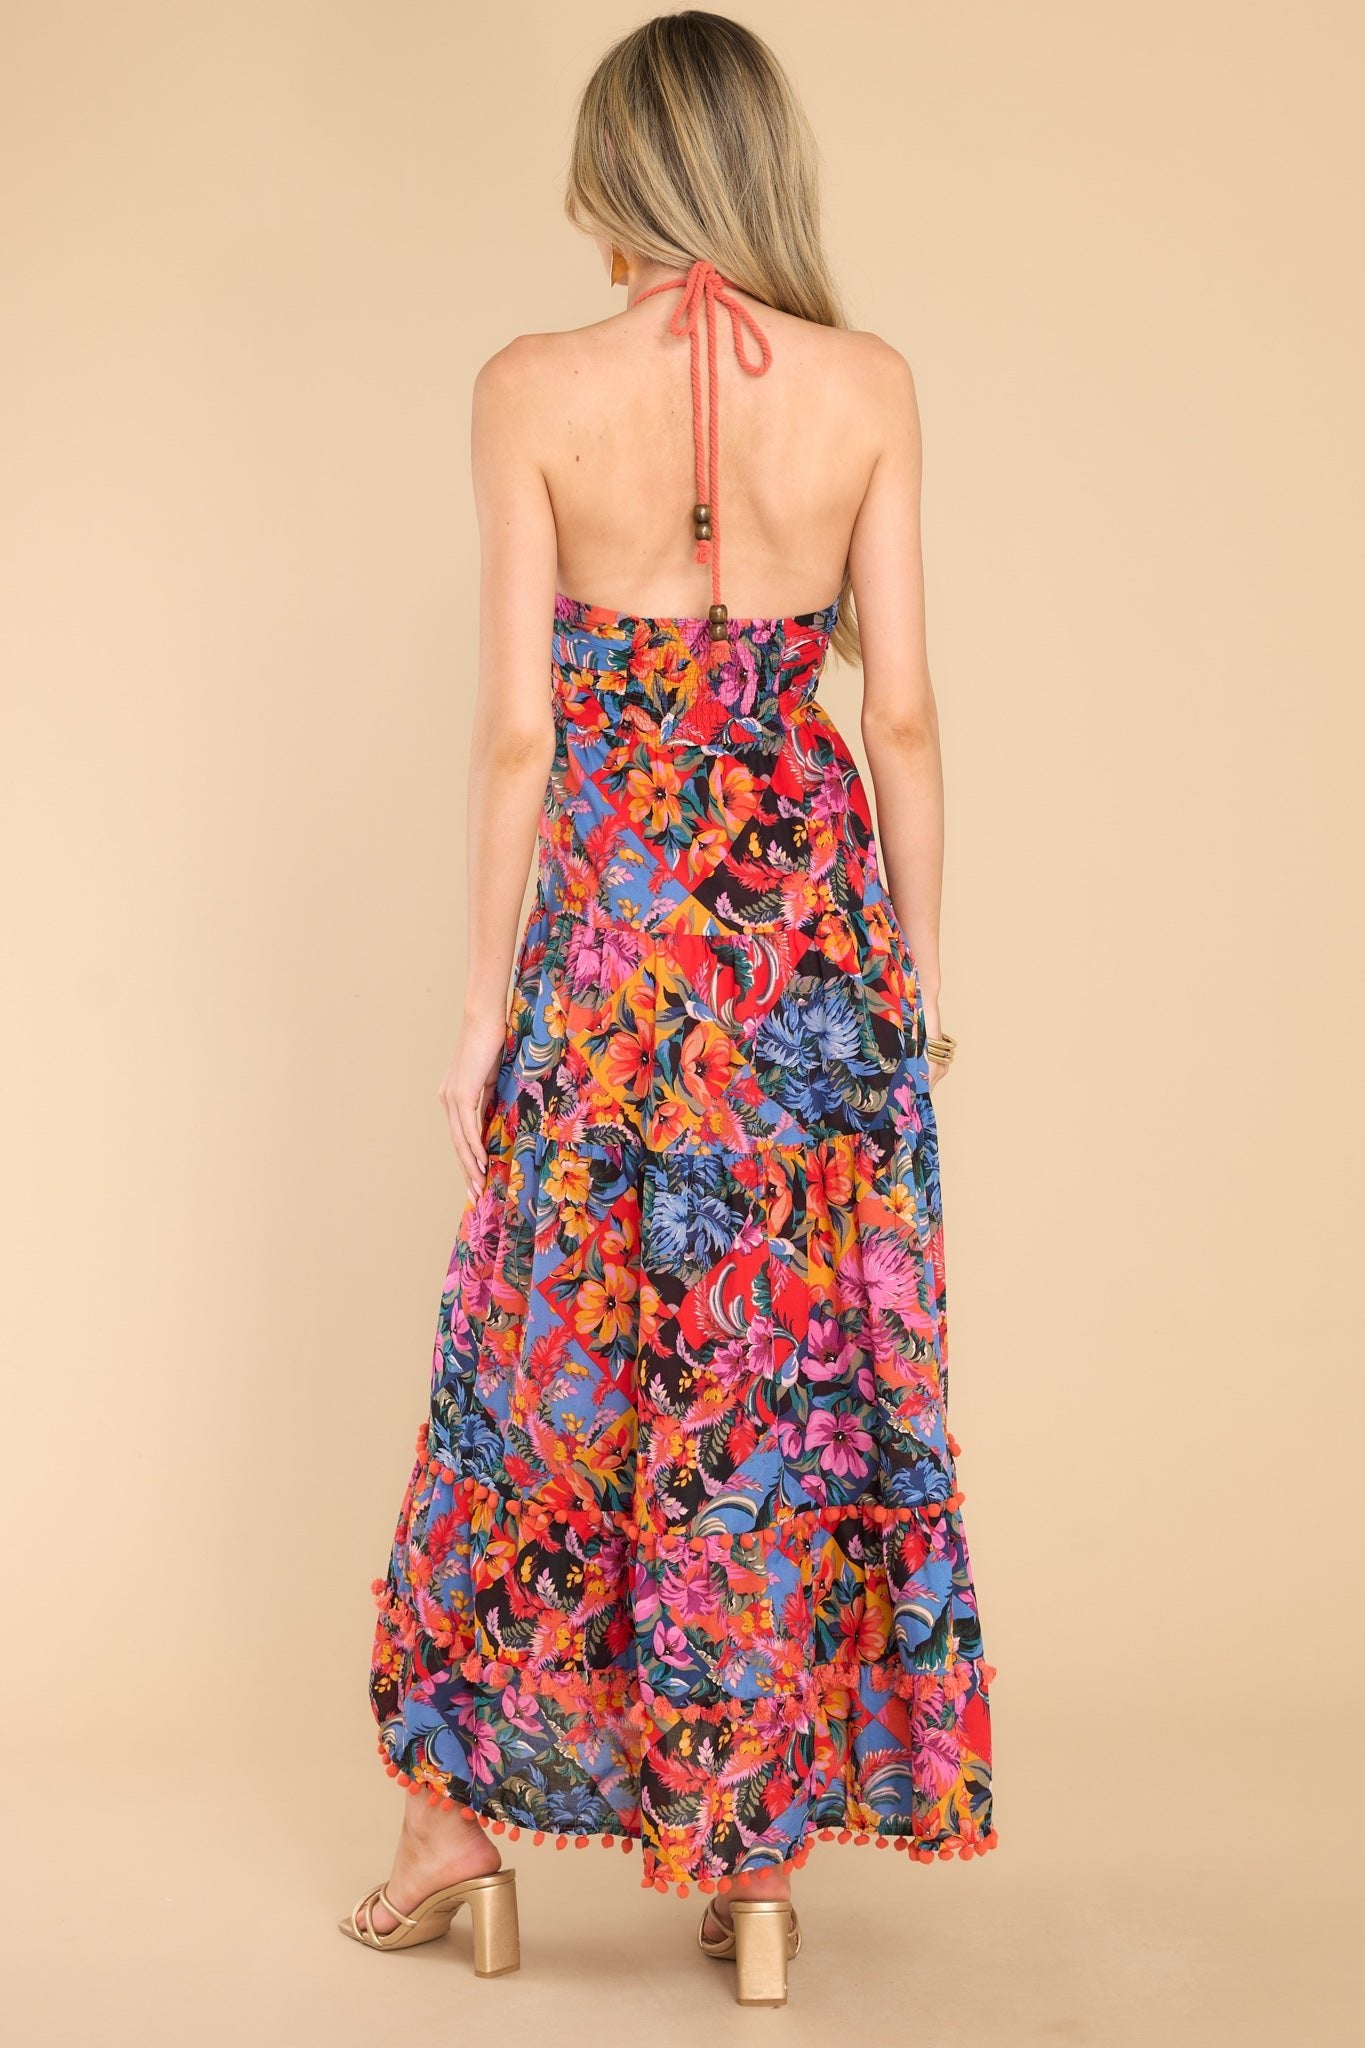 Darling Multi Floral Print Maxi Dress - All Dresses | Red Dress